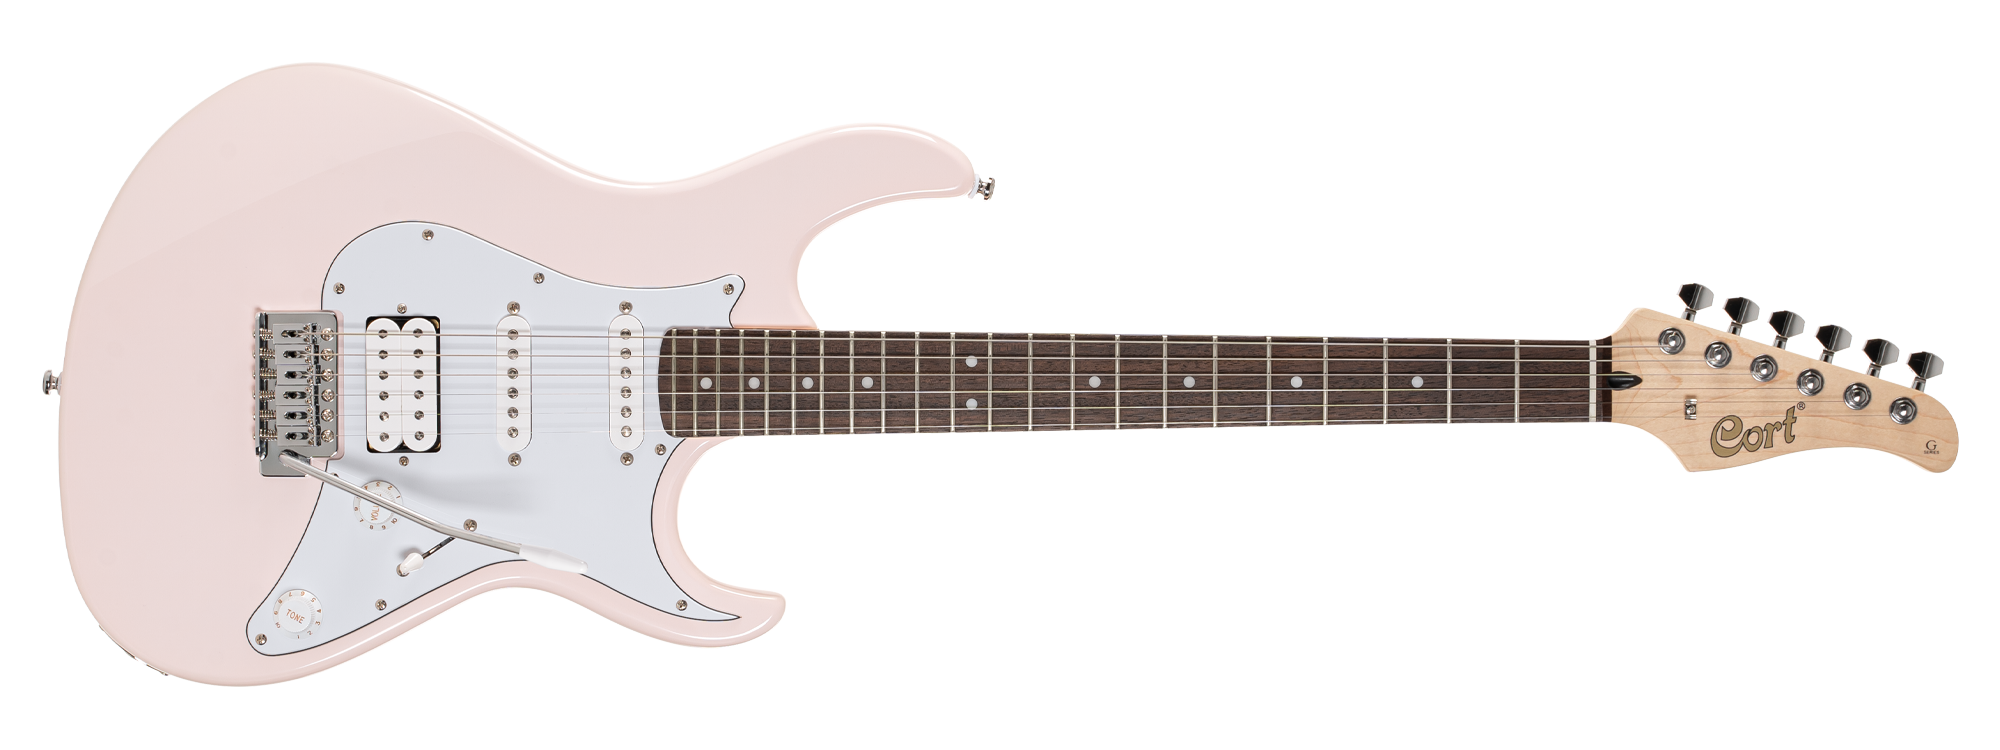 Đàn Guitar Điện Cort G200